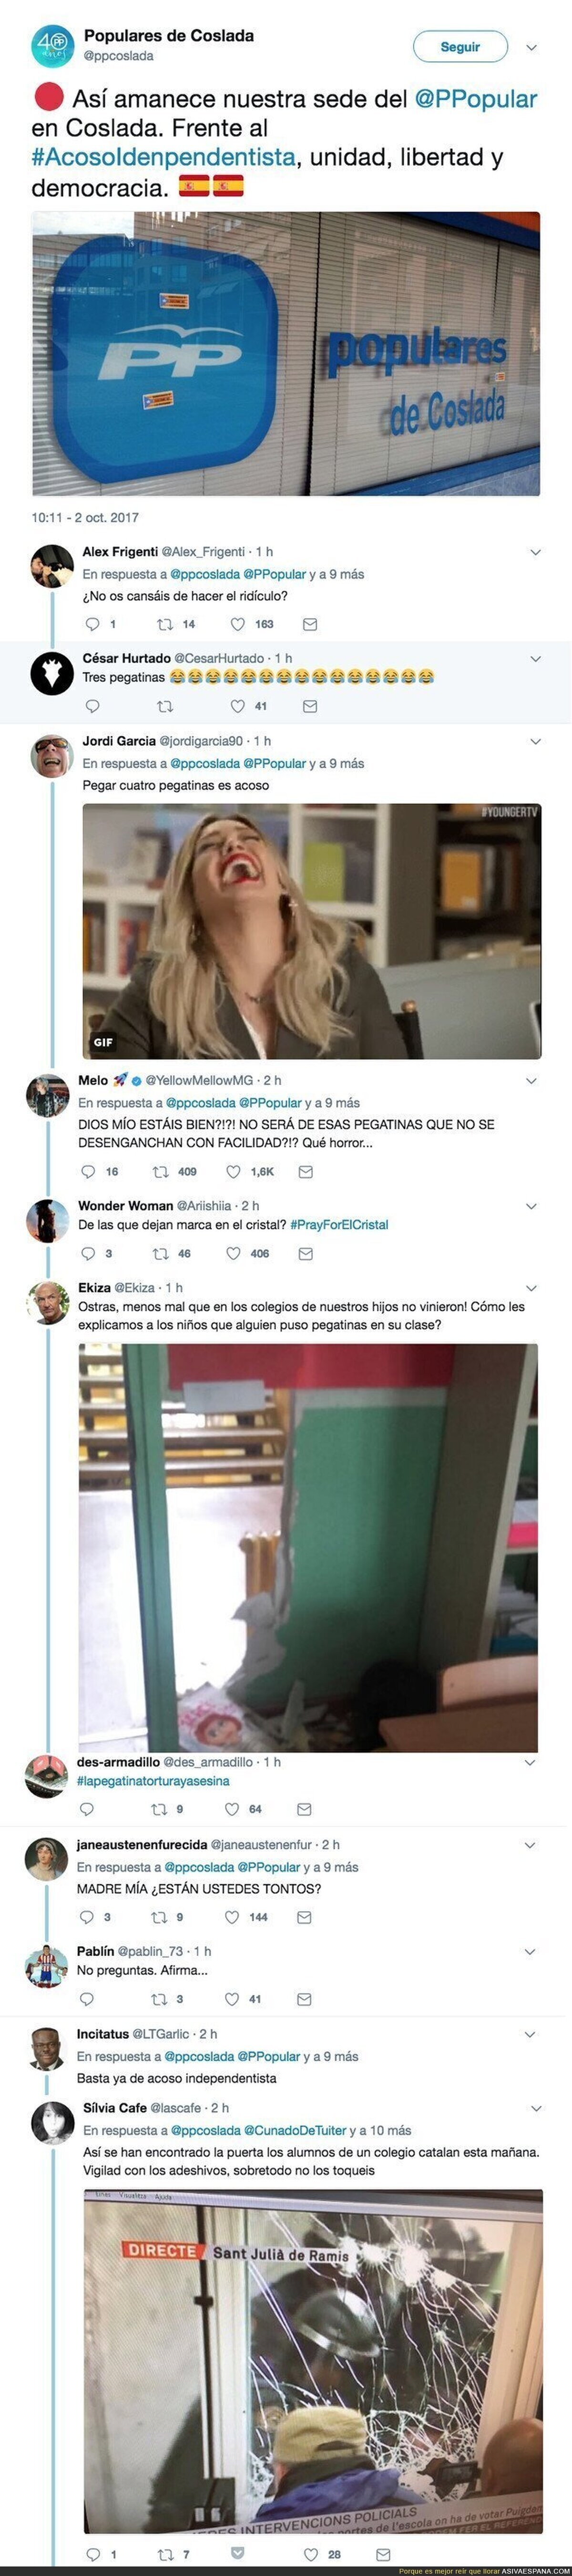 El PP de Coslada denuncia vandalismo en su sede y todo internet se ríe de ellos